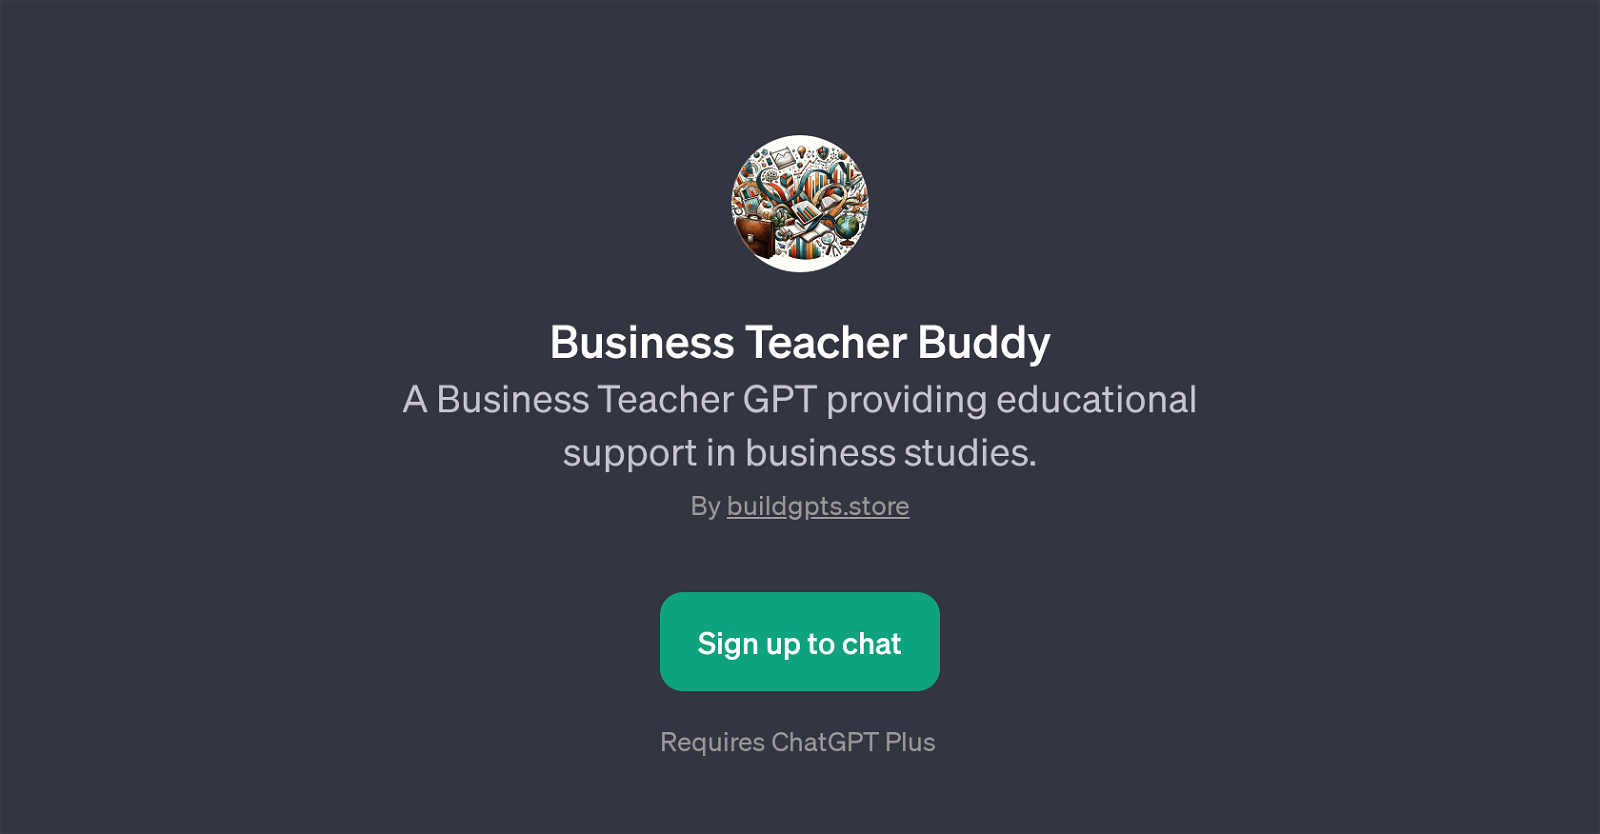 Business Teacher Buddy website